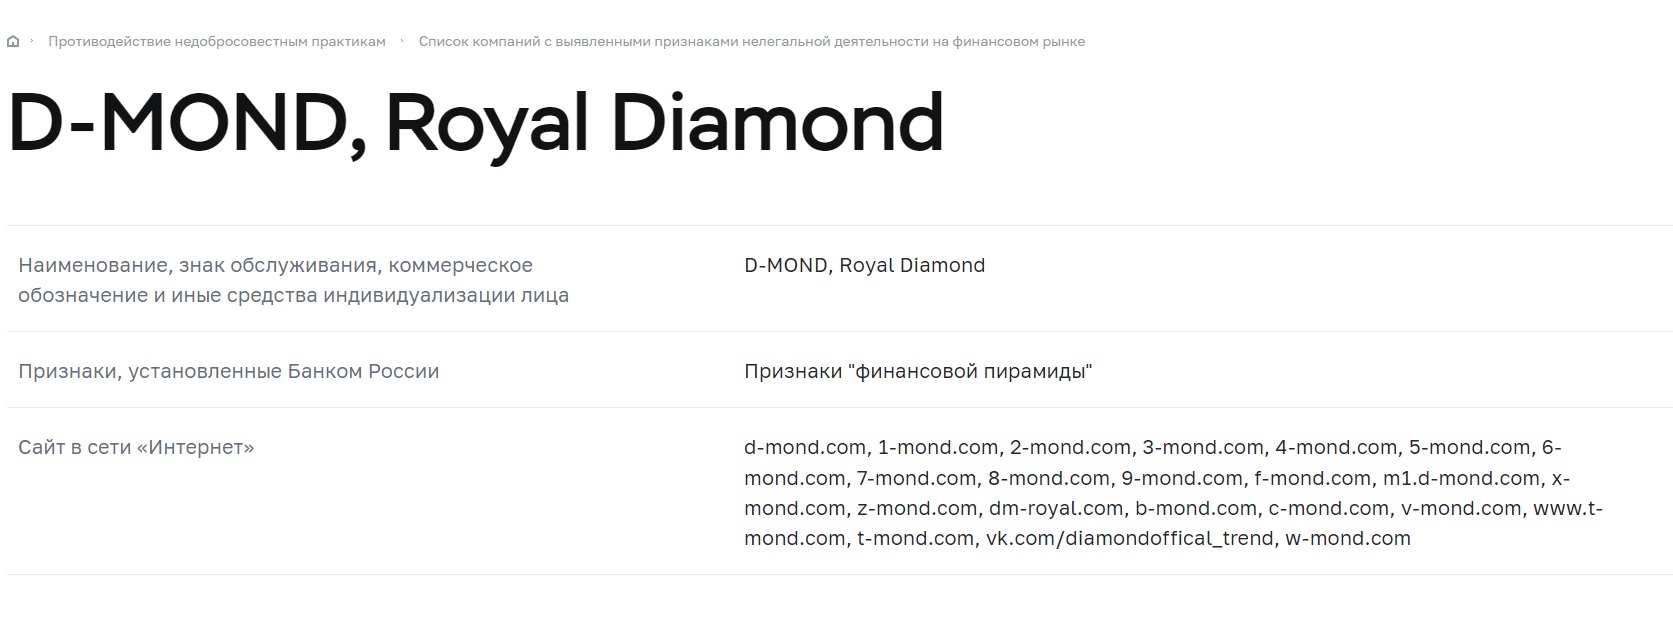 Royal Diamond — приглашайте товарищей и теряйте свои деньги вместе